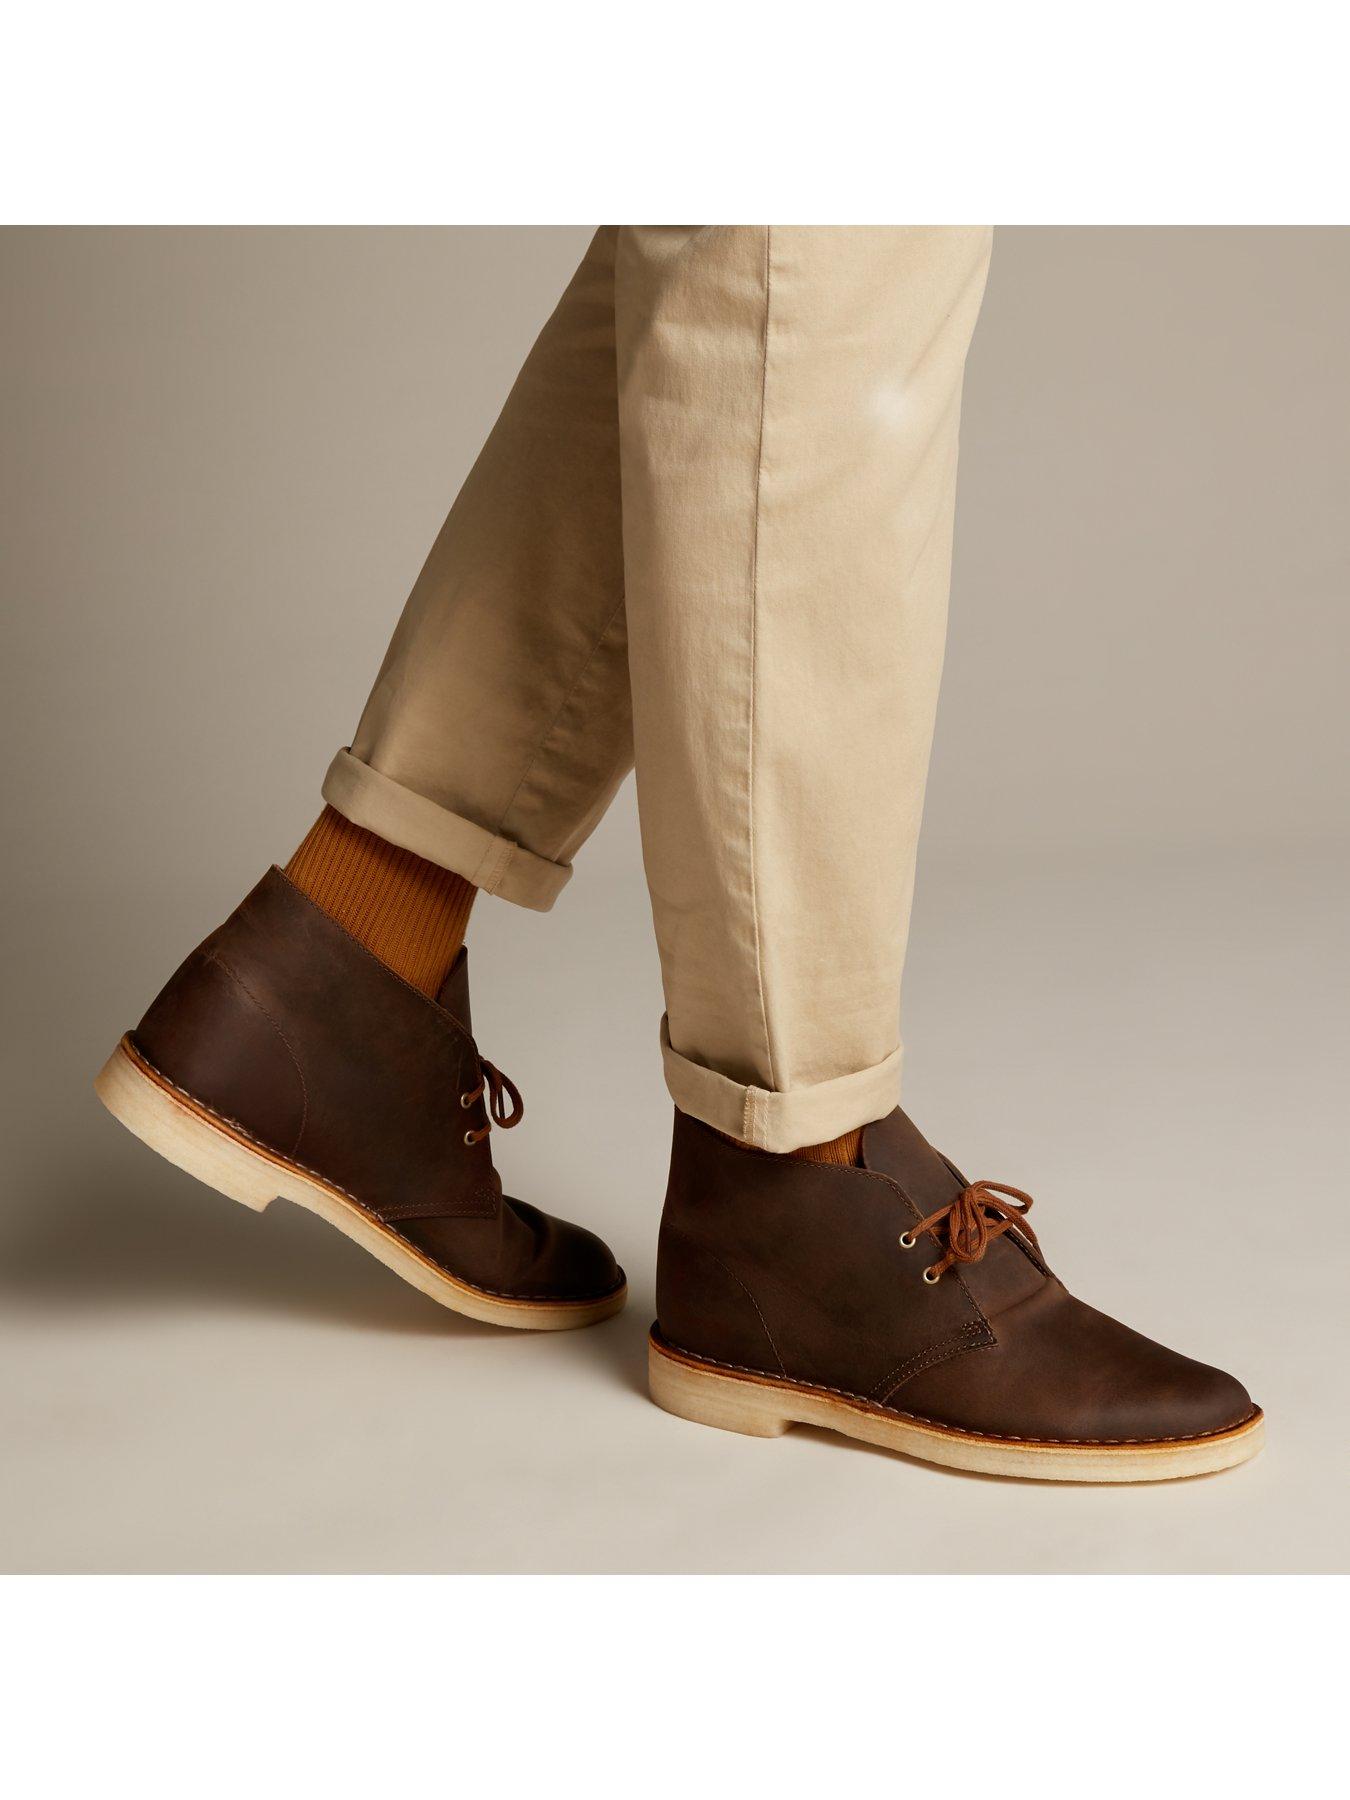 clarks originals men's desert boot brown beeswax